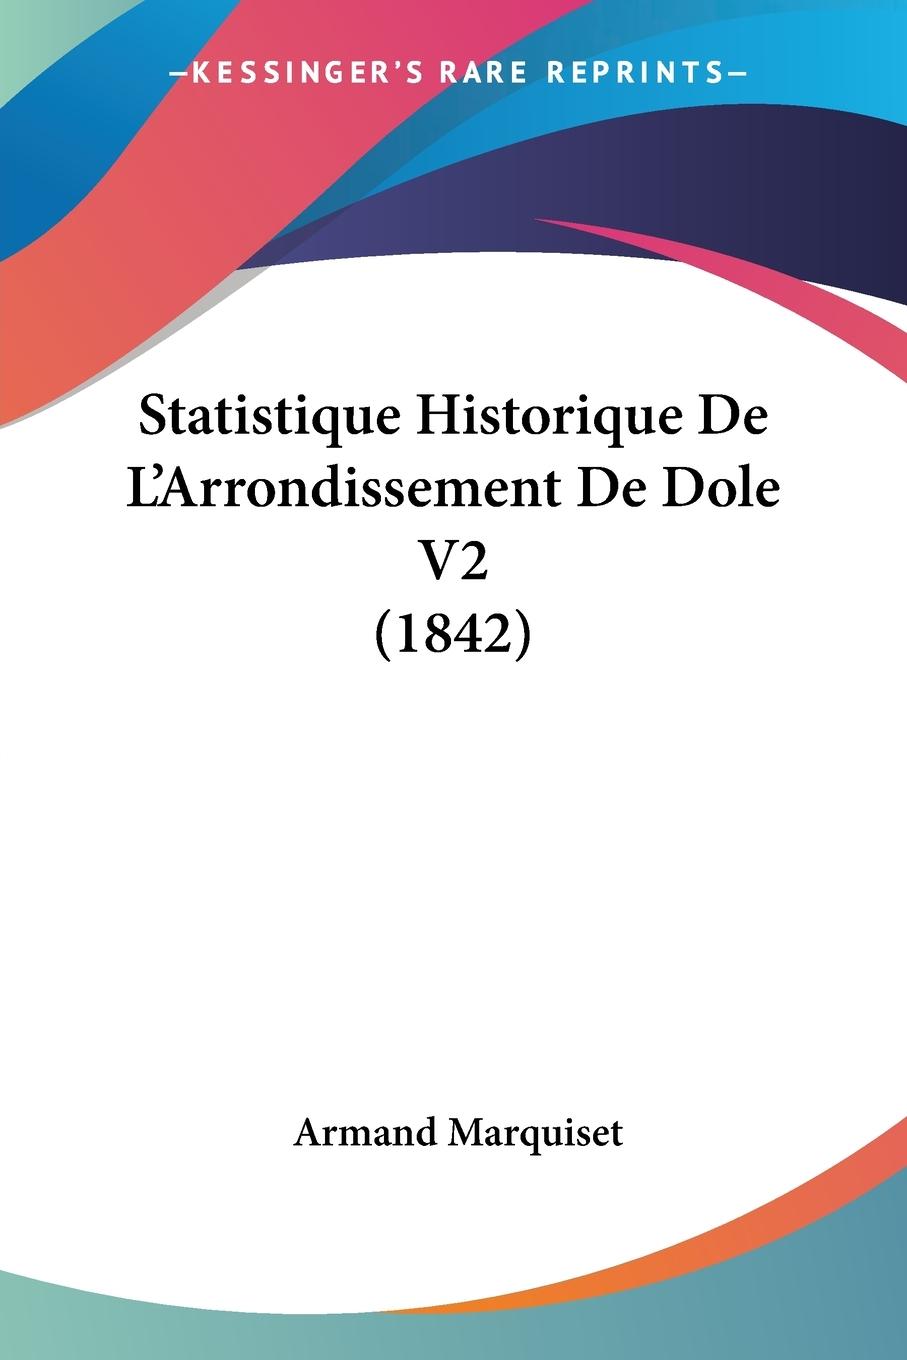 Statistique Historique De L Arrondissement De Dole V2 (1842) - Marquiset, Armand